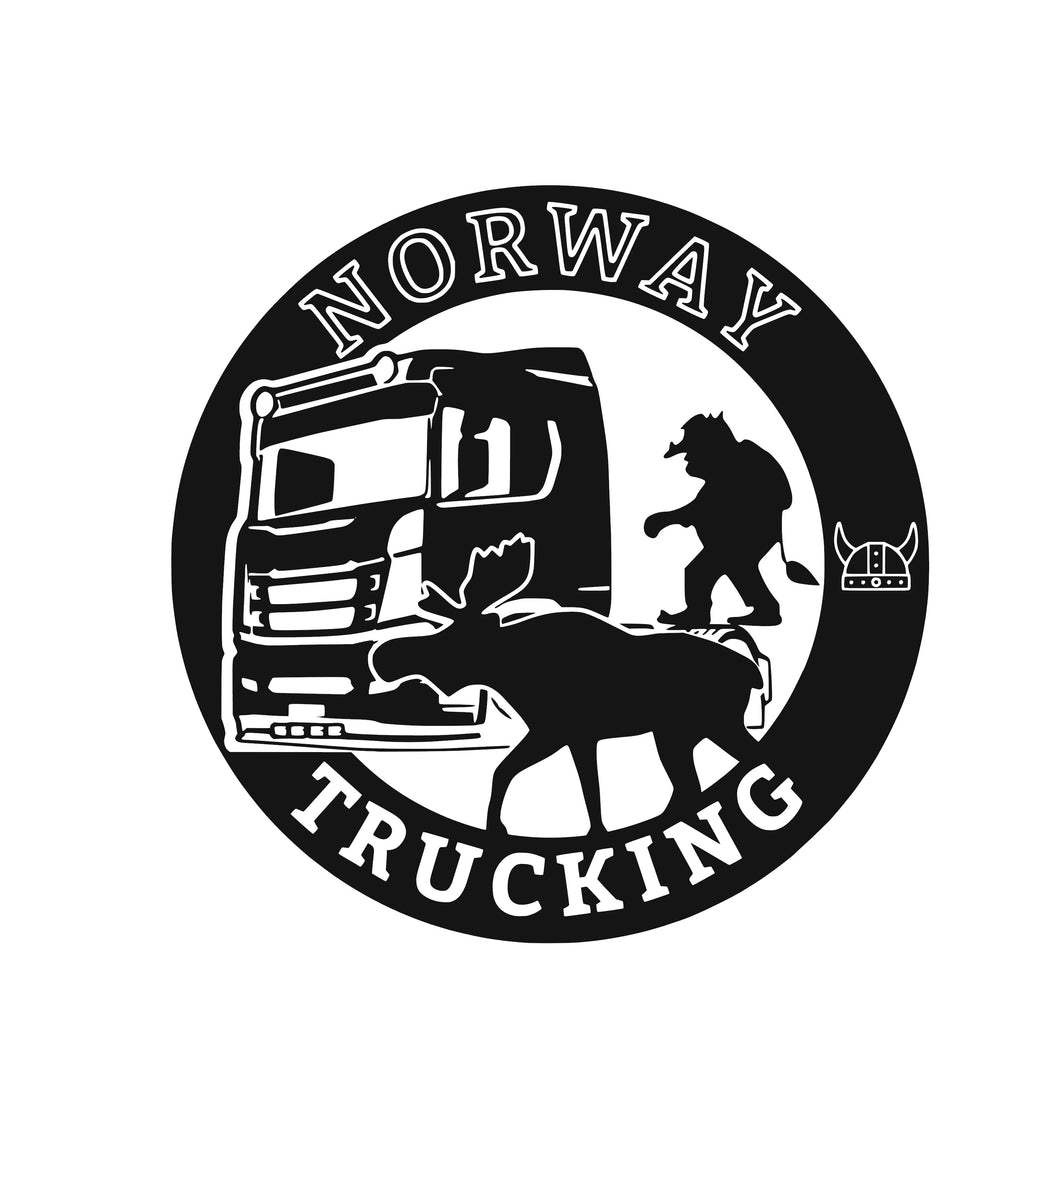 Norway Trucking-Sticker